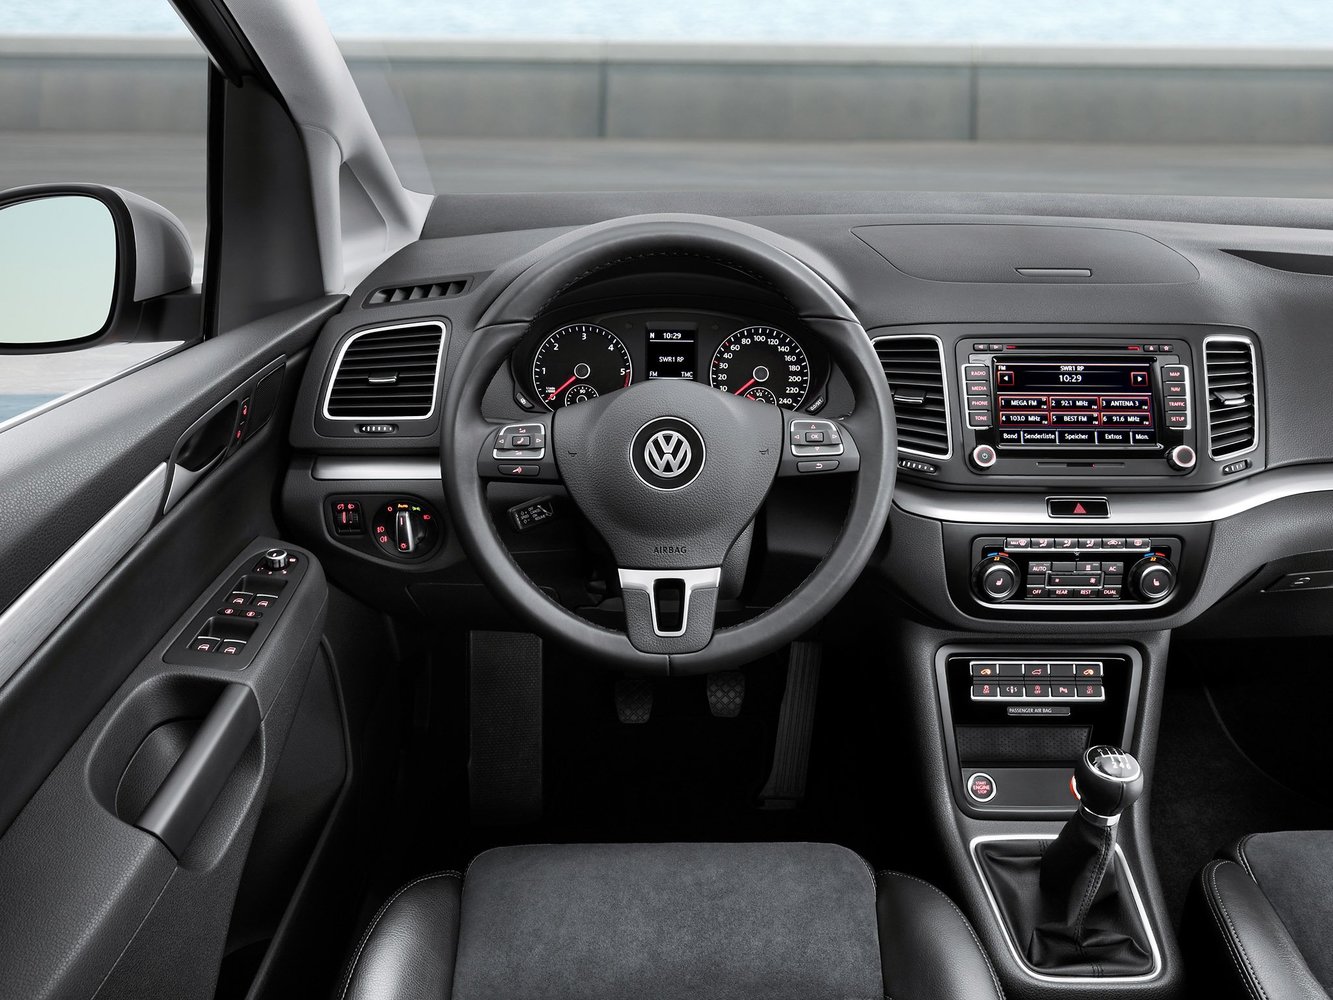 минивэн Volkswagen Sharan 2010 - 2015г выпуска модификация 1.4 AMT (150 л.с.)